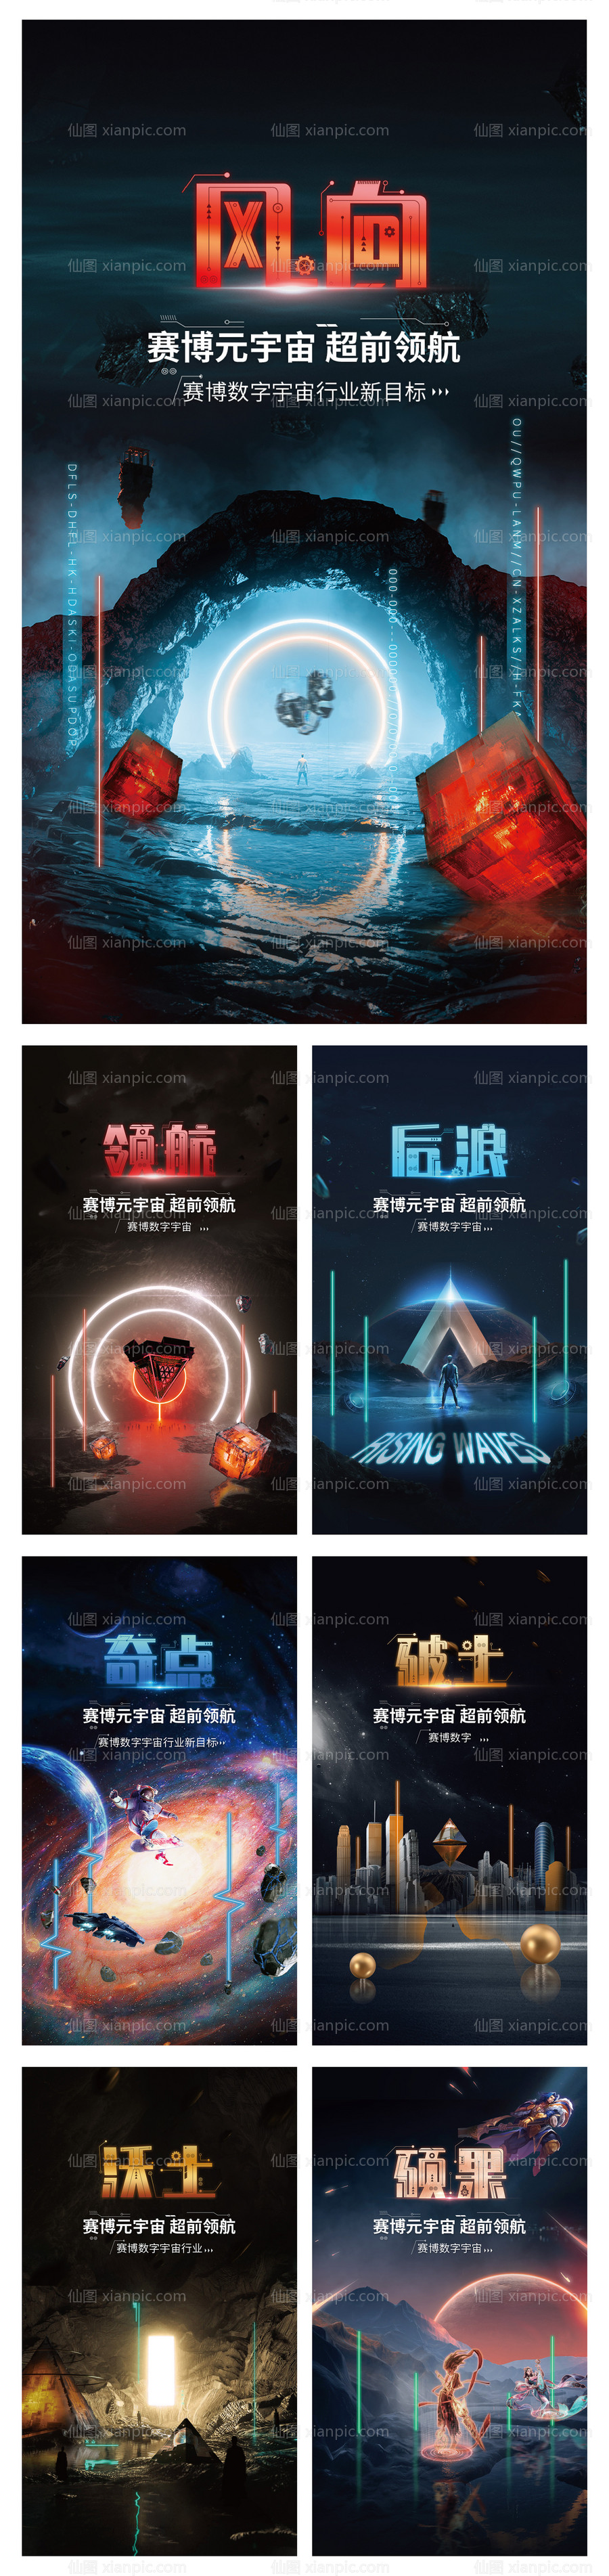 素材乐-赛博元宇宙科技未来系列海报